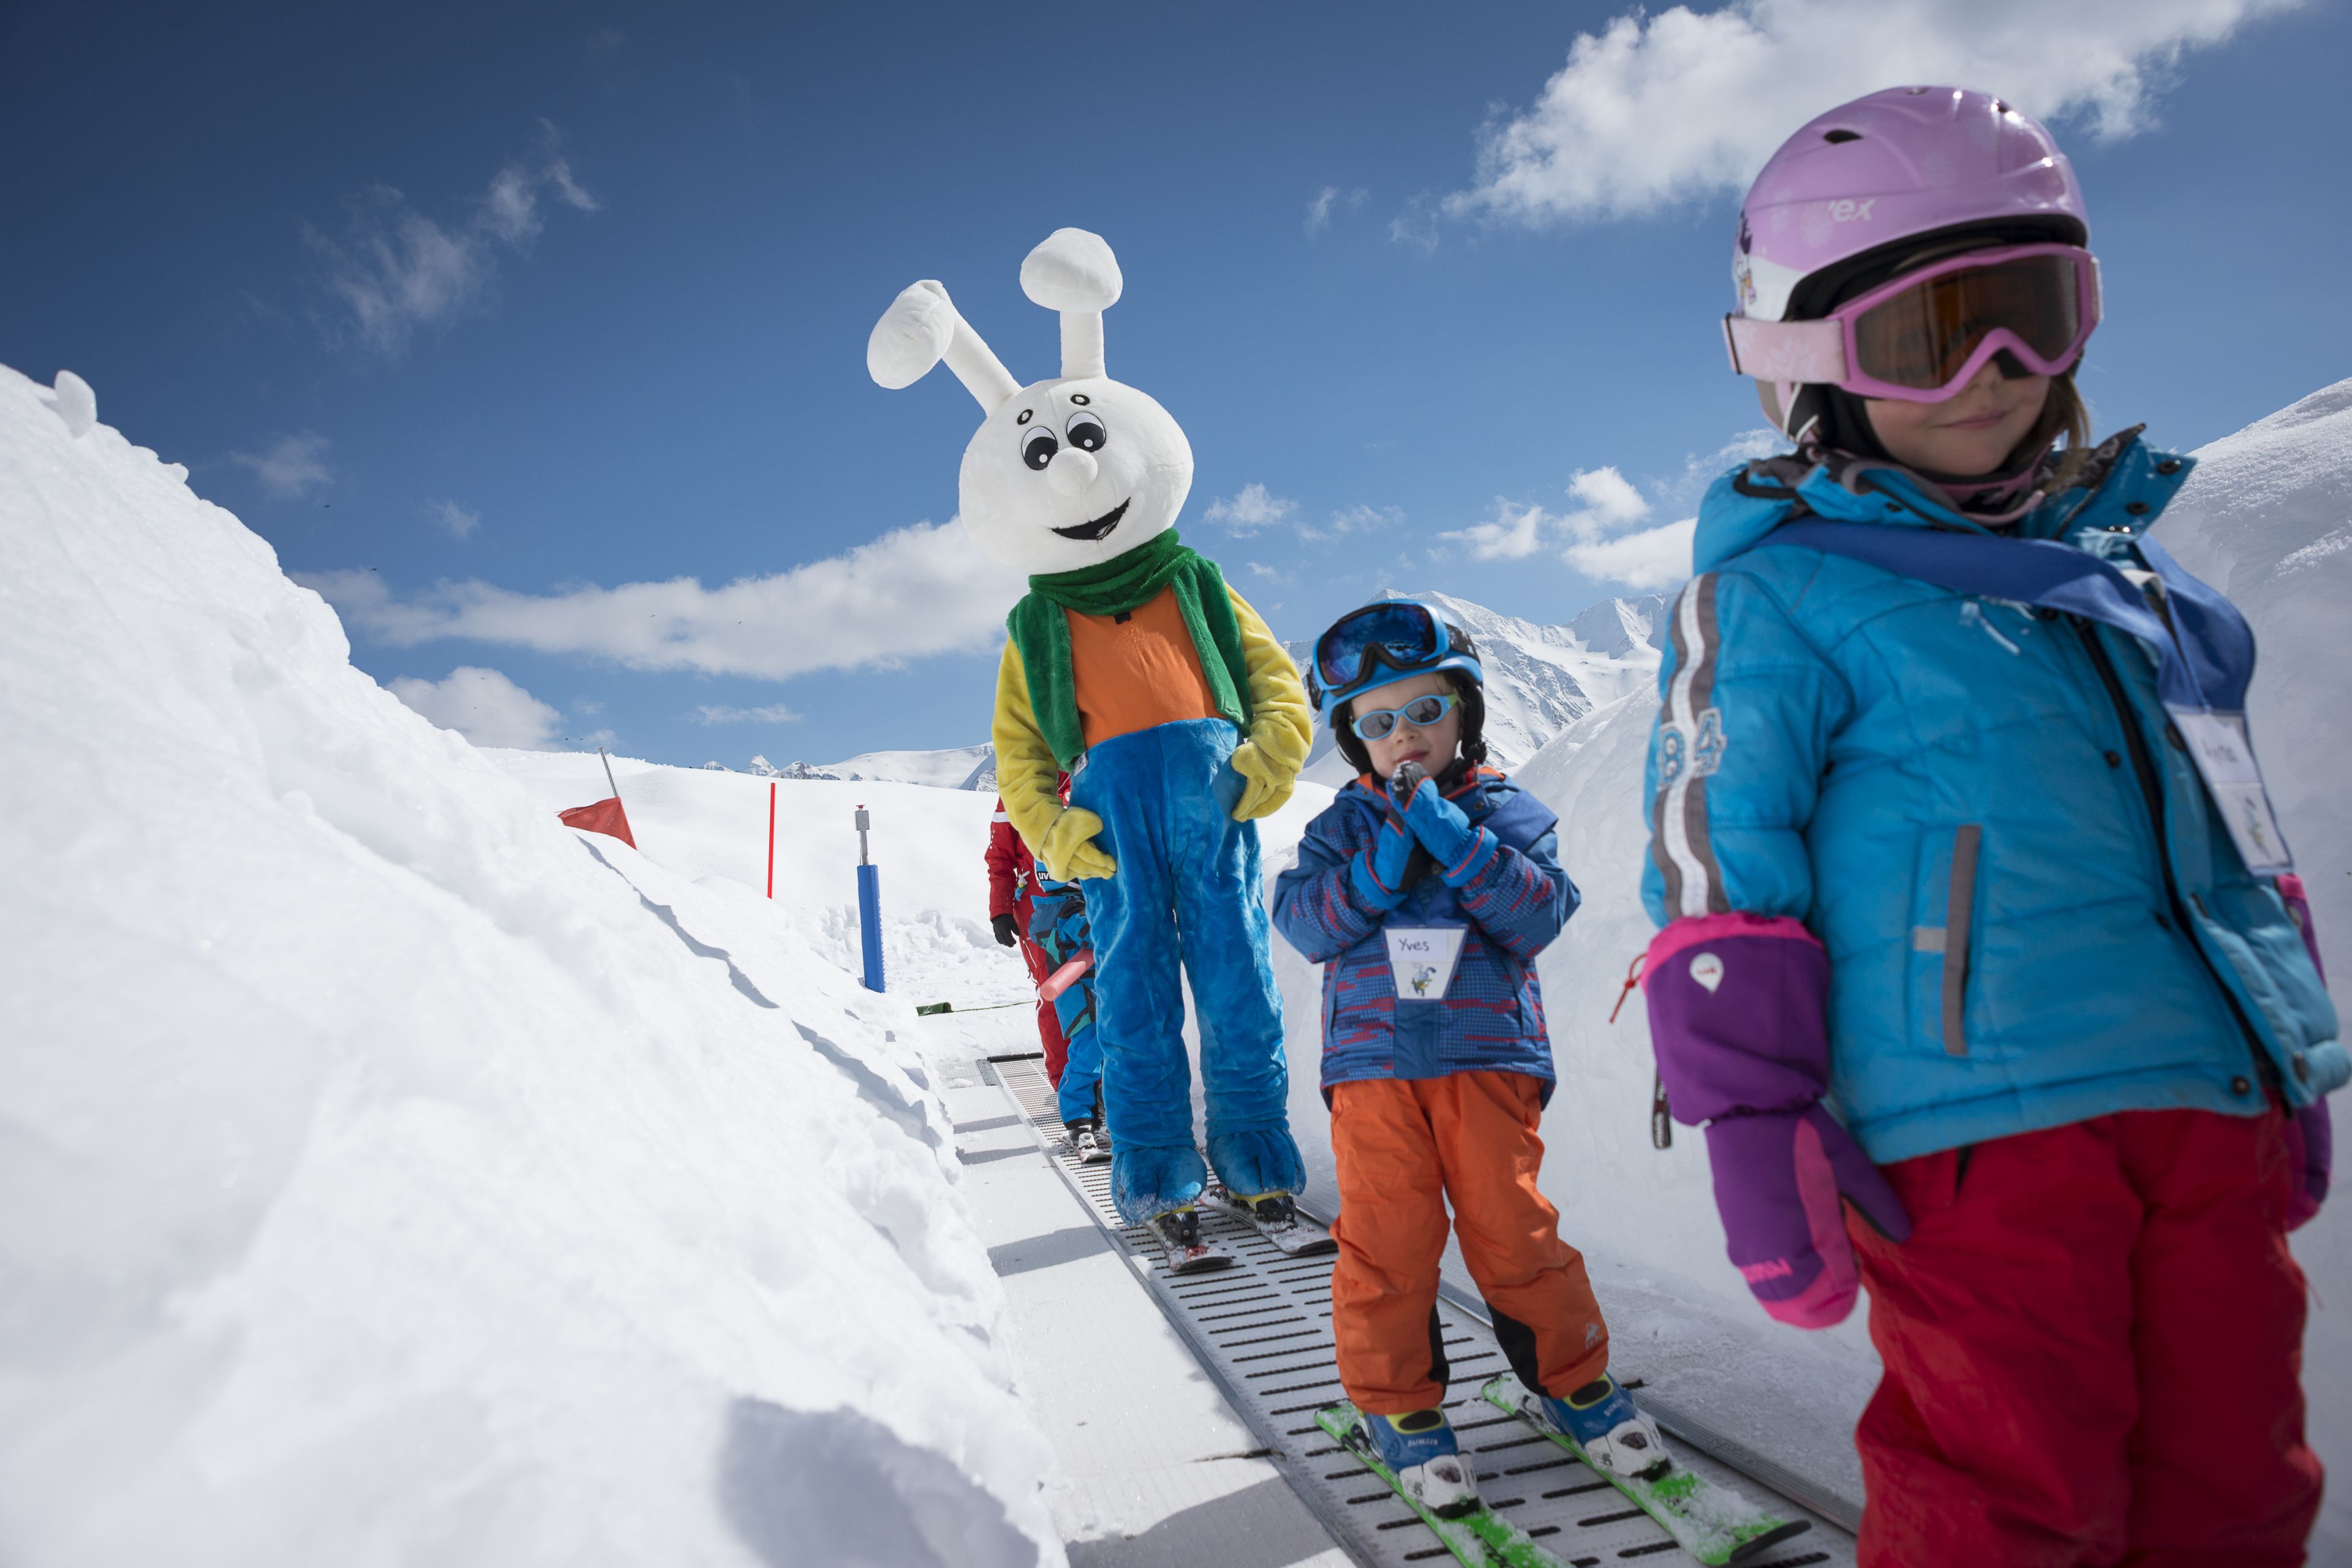 Snowli, la mascotte du jardin des neiges, accompagne les enfants sur le tapis magique, un téléski qui les mène au sommet de la mini-piste